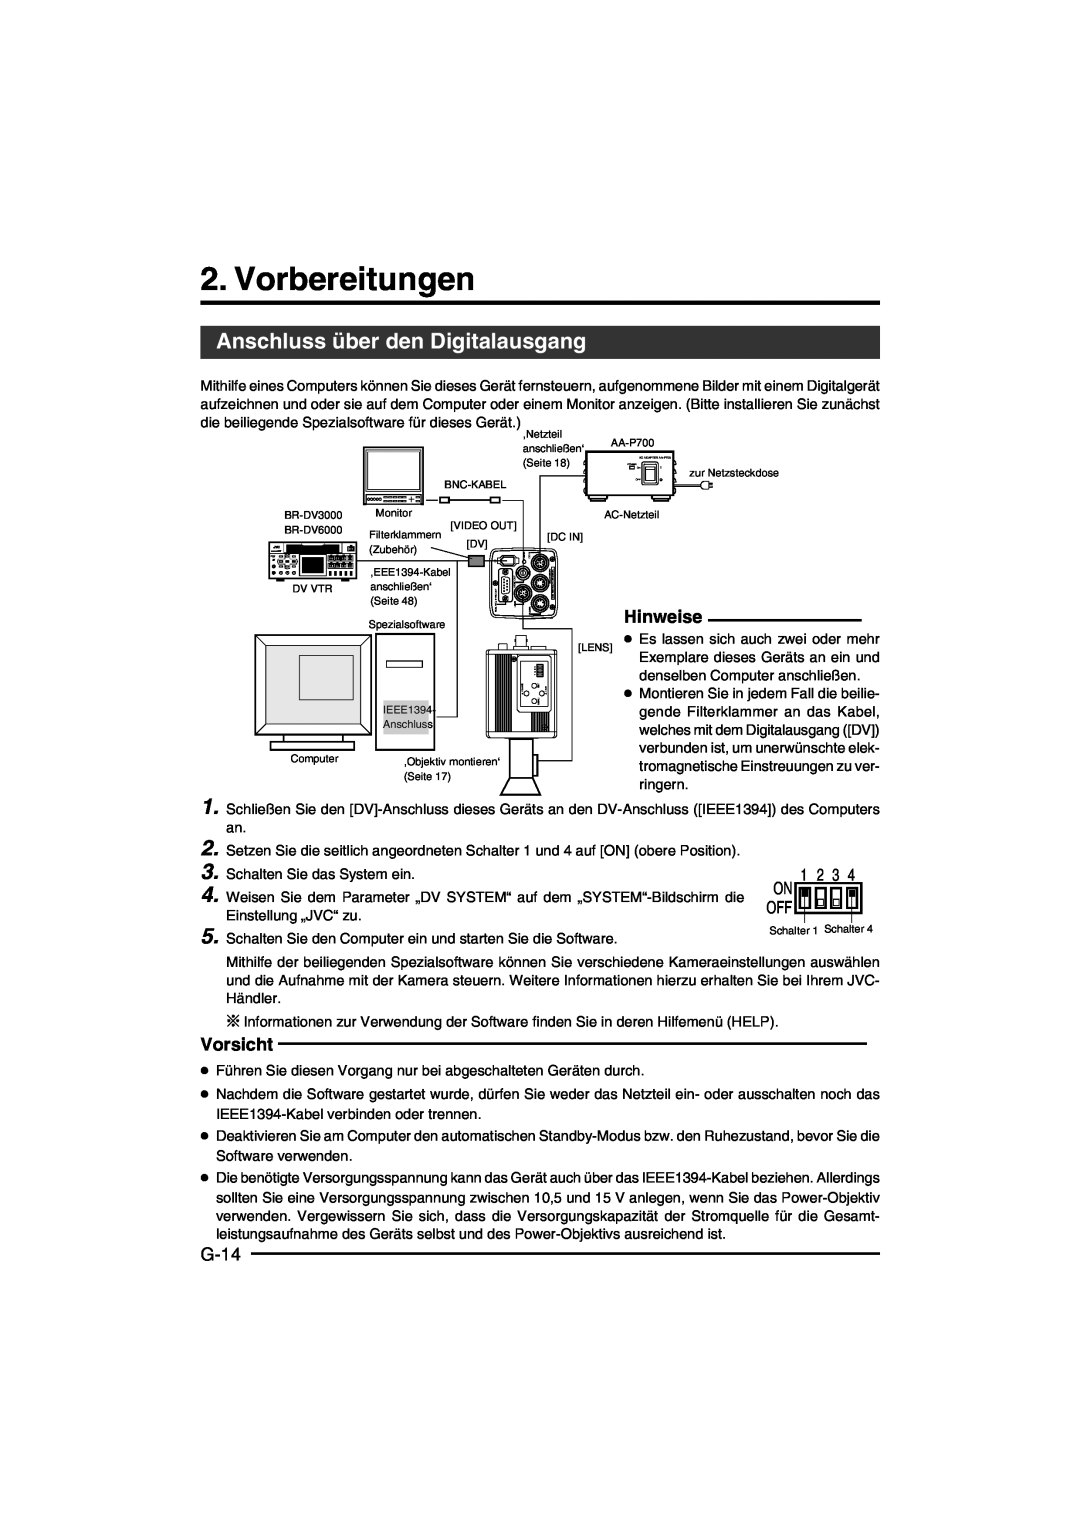 JVC KY-F550E instruction manual Vorbereitungen, Anschluss über den Digitalausgang, Hinweise, G-14, Vorsicht 